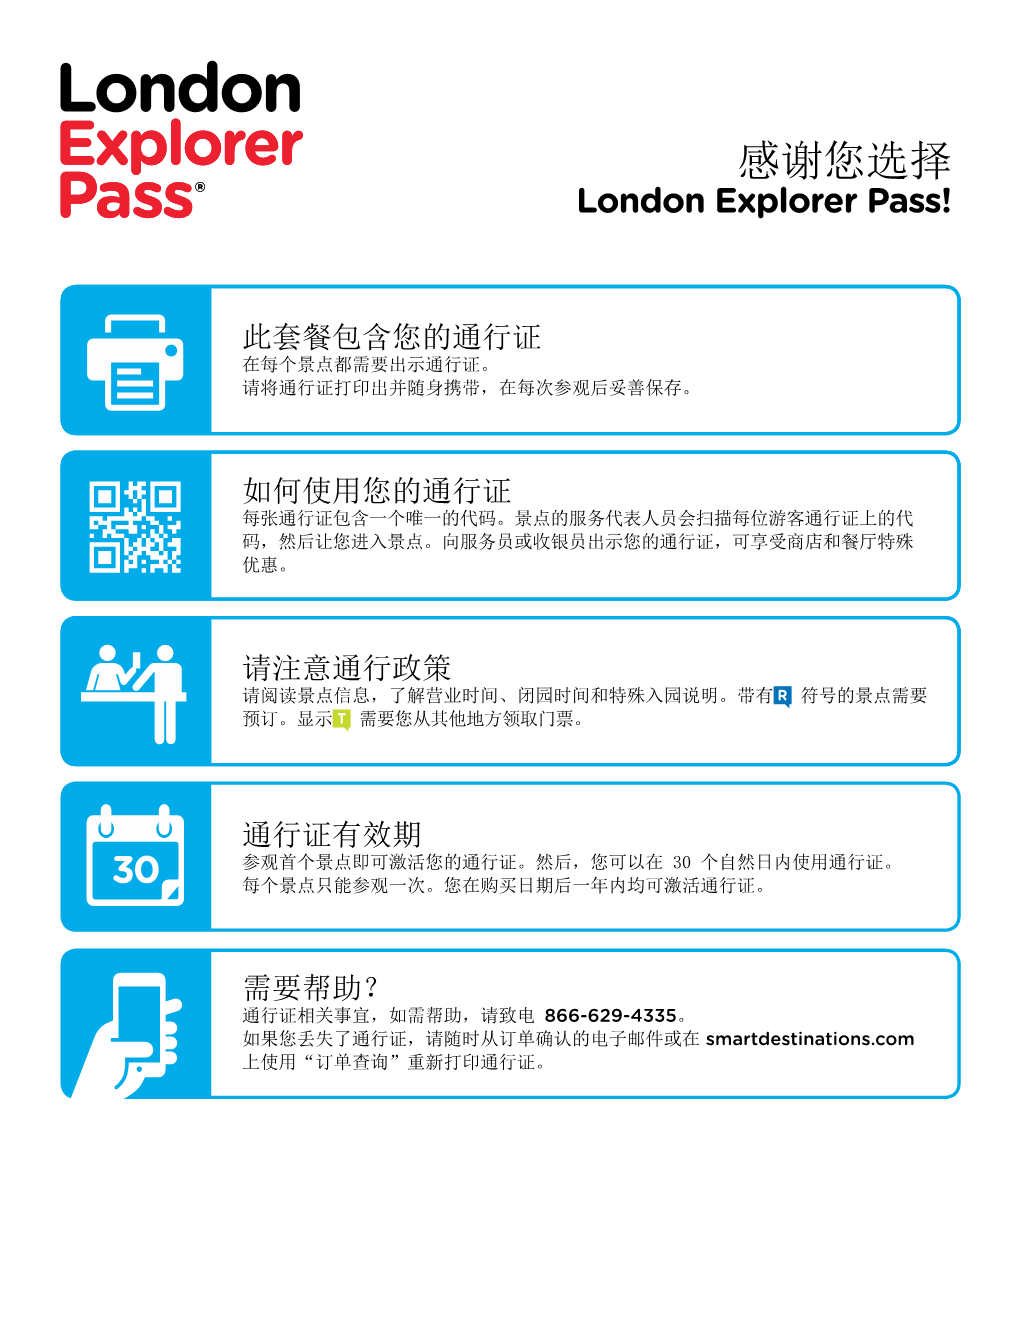 感谢您选择 London Explorer Pass!